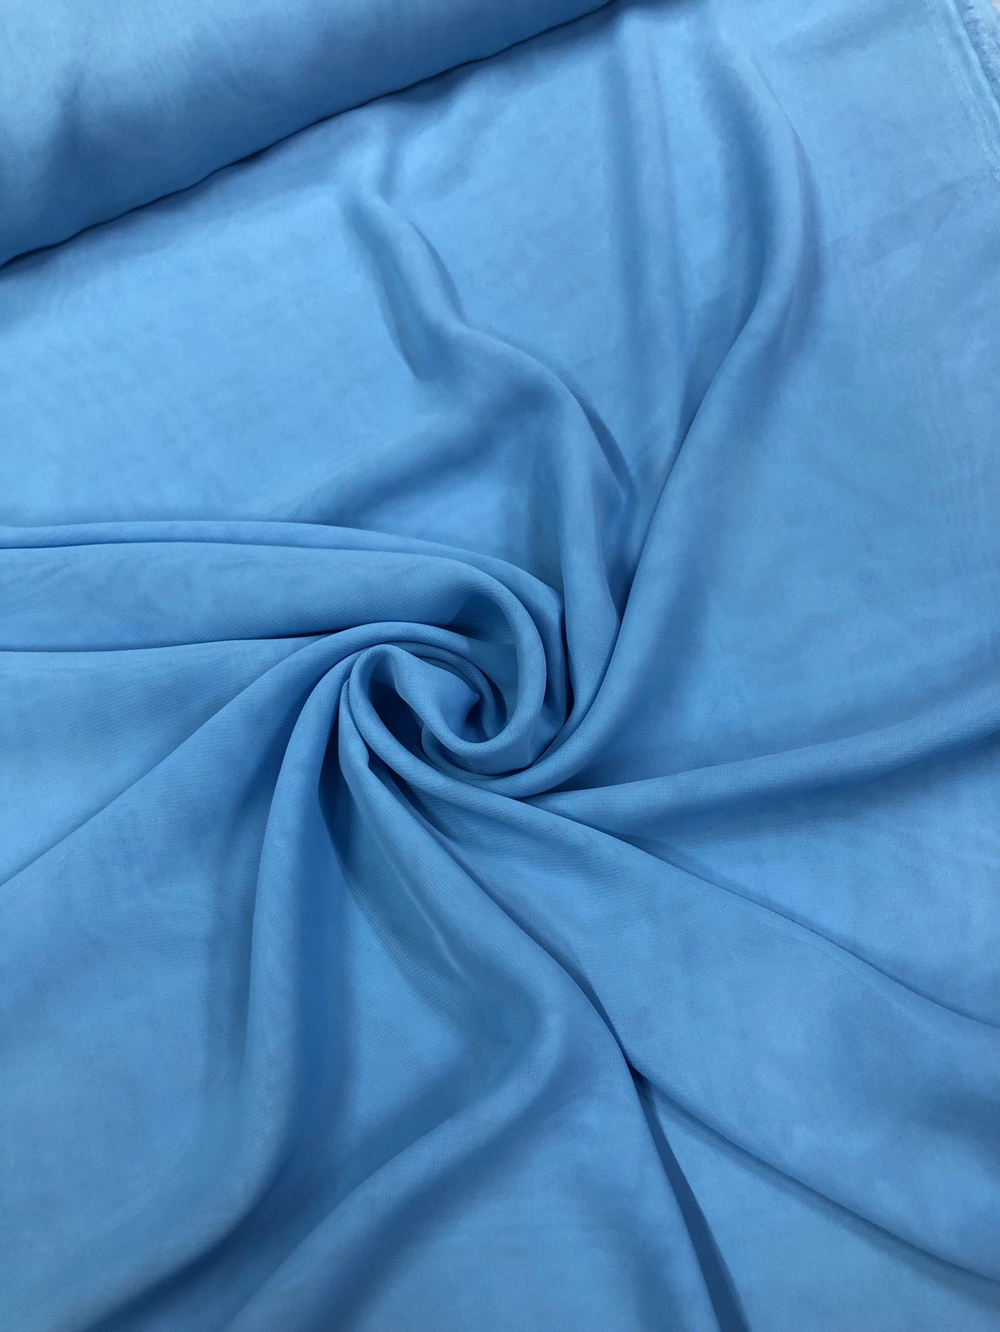 Ткань Шифон голубой арт. 324648